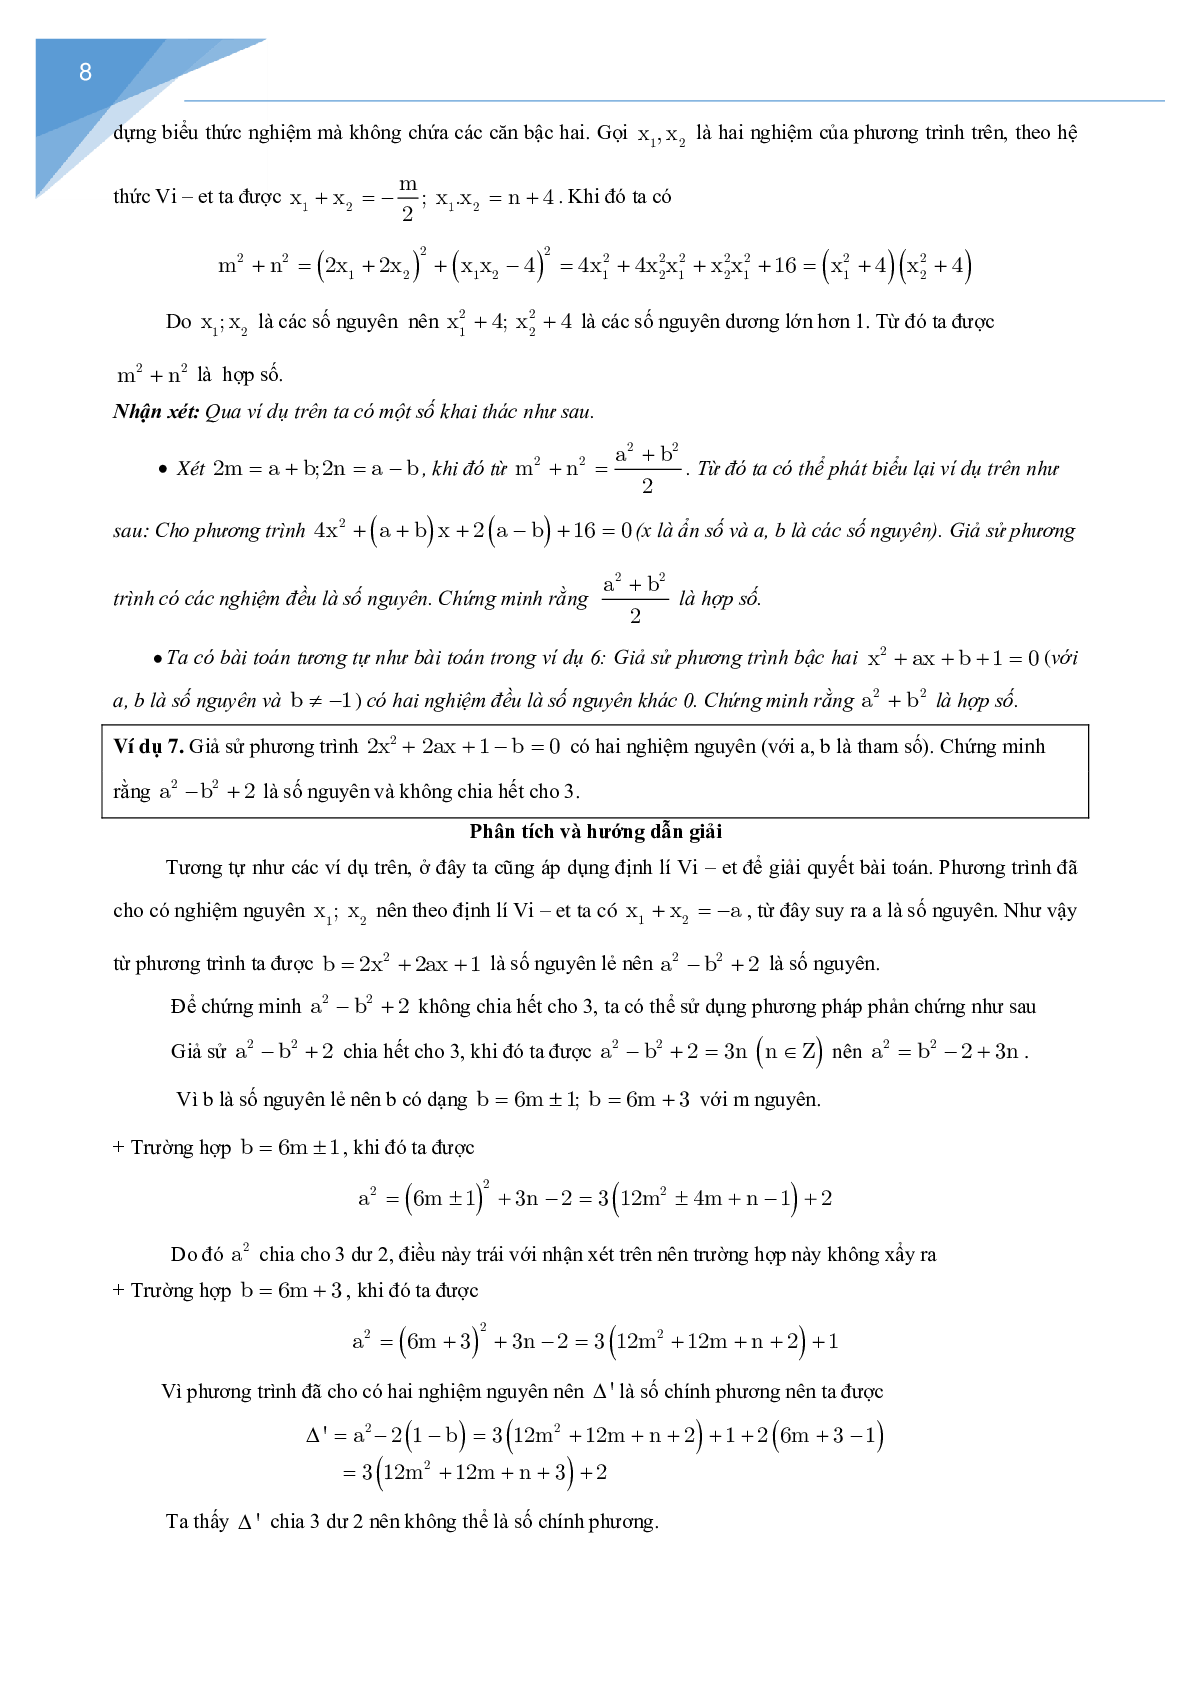 Vận dụng định lý Vi-et giải một số bài toán số học (trang 8)